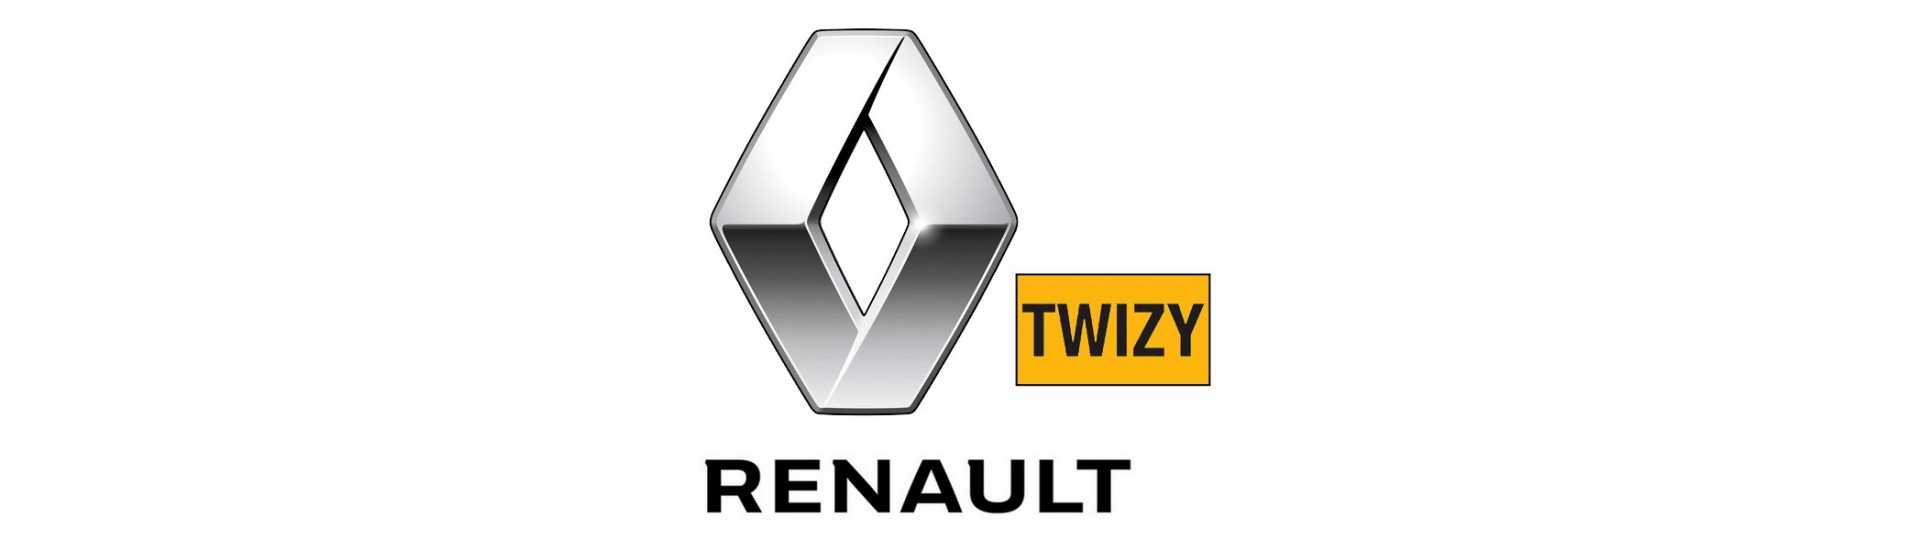 Silent bloc au meilleur prix pour voiture sans permis Renault Twizy